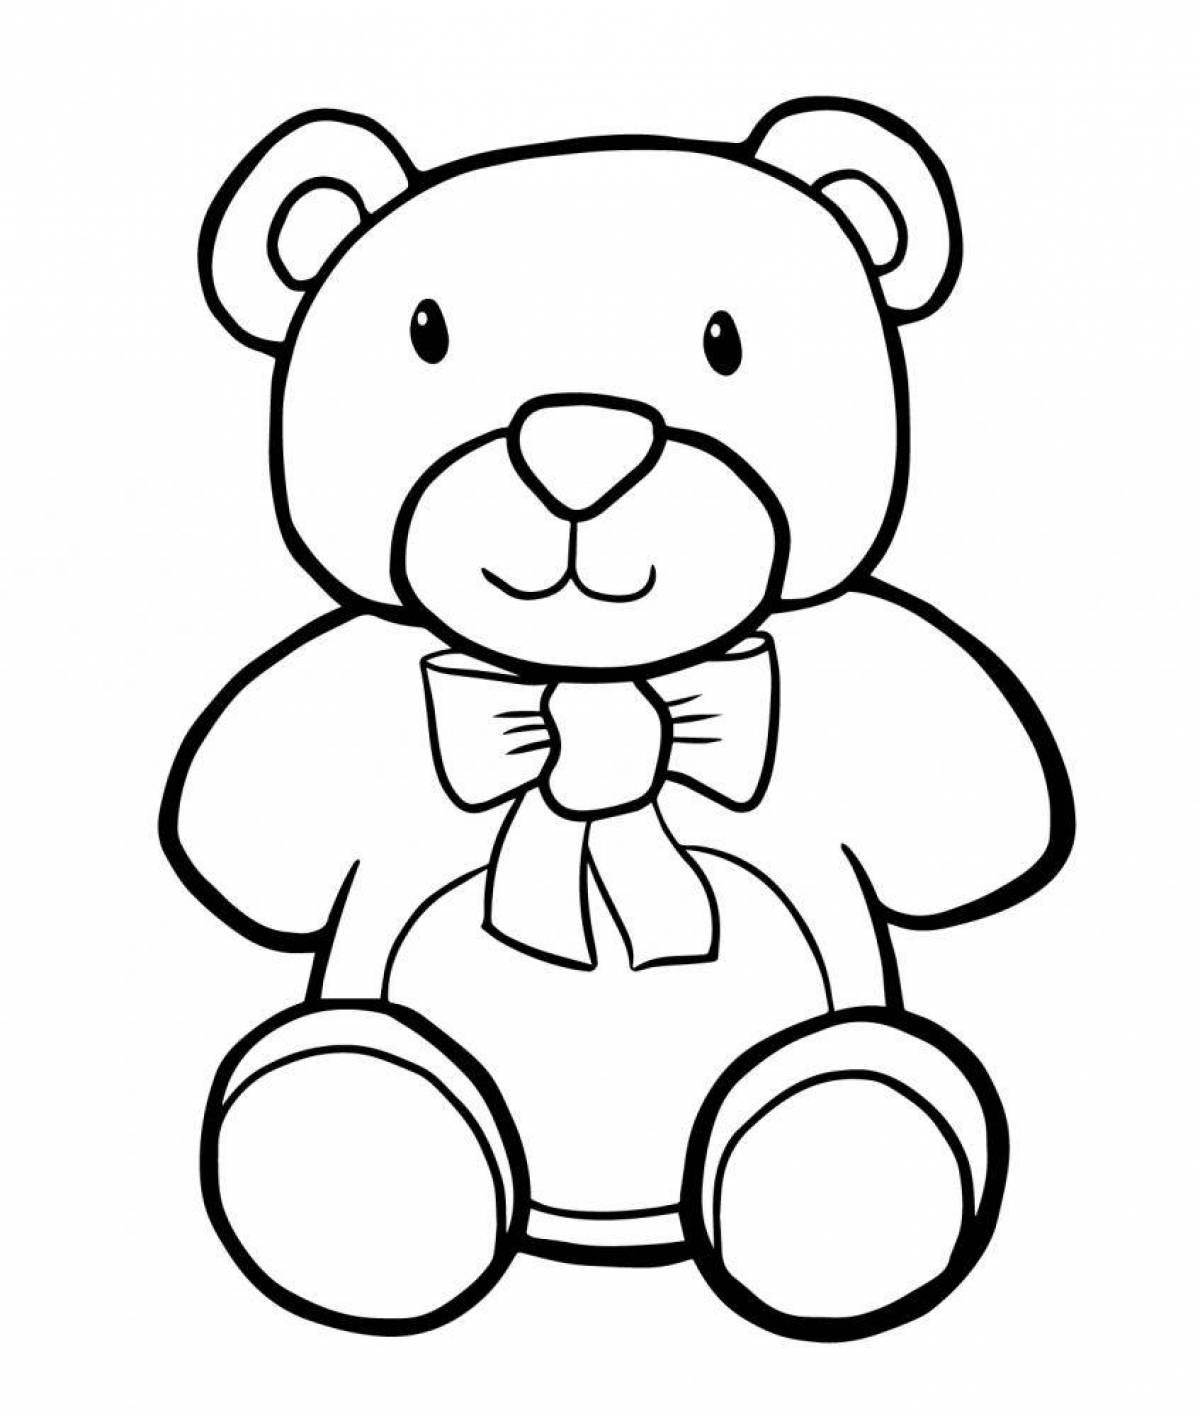 Huggable coloring bear